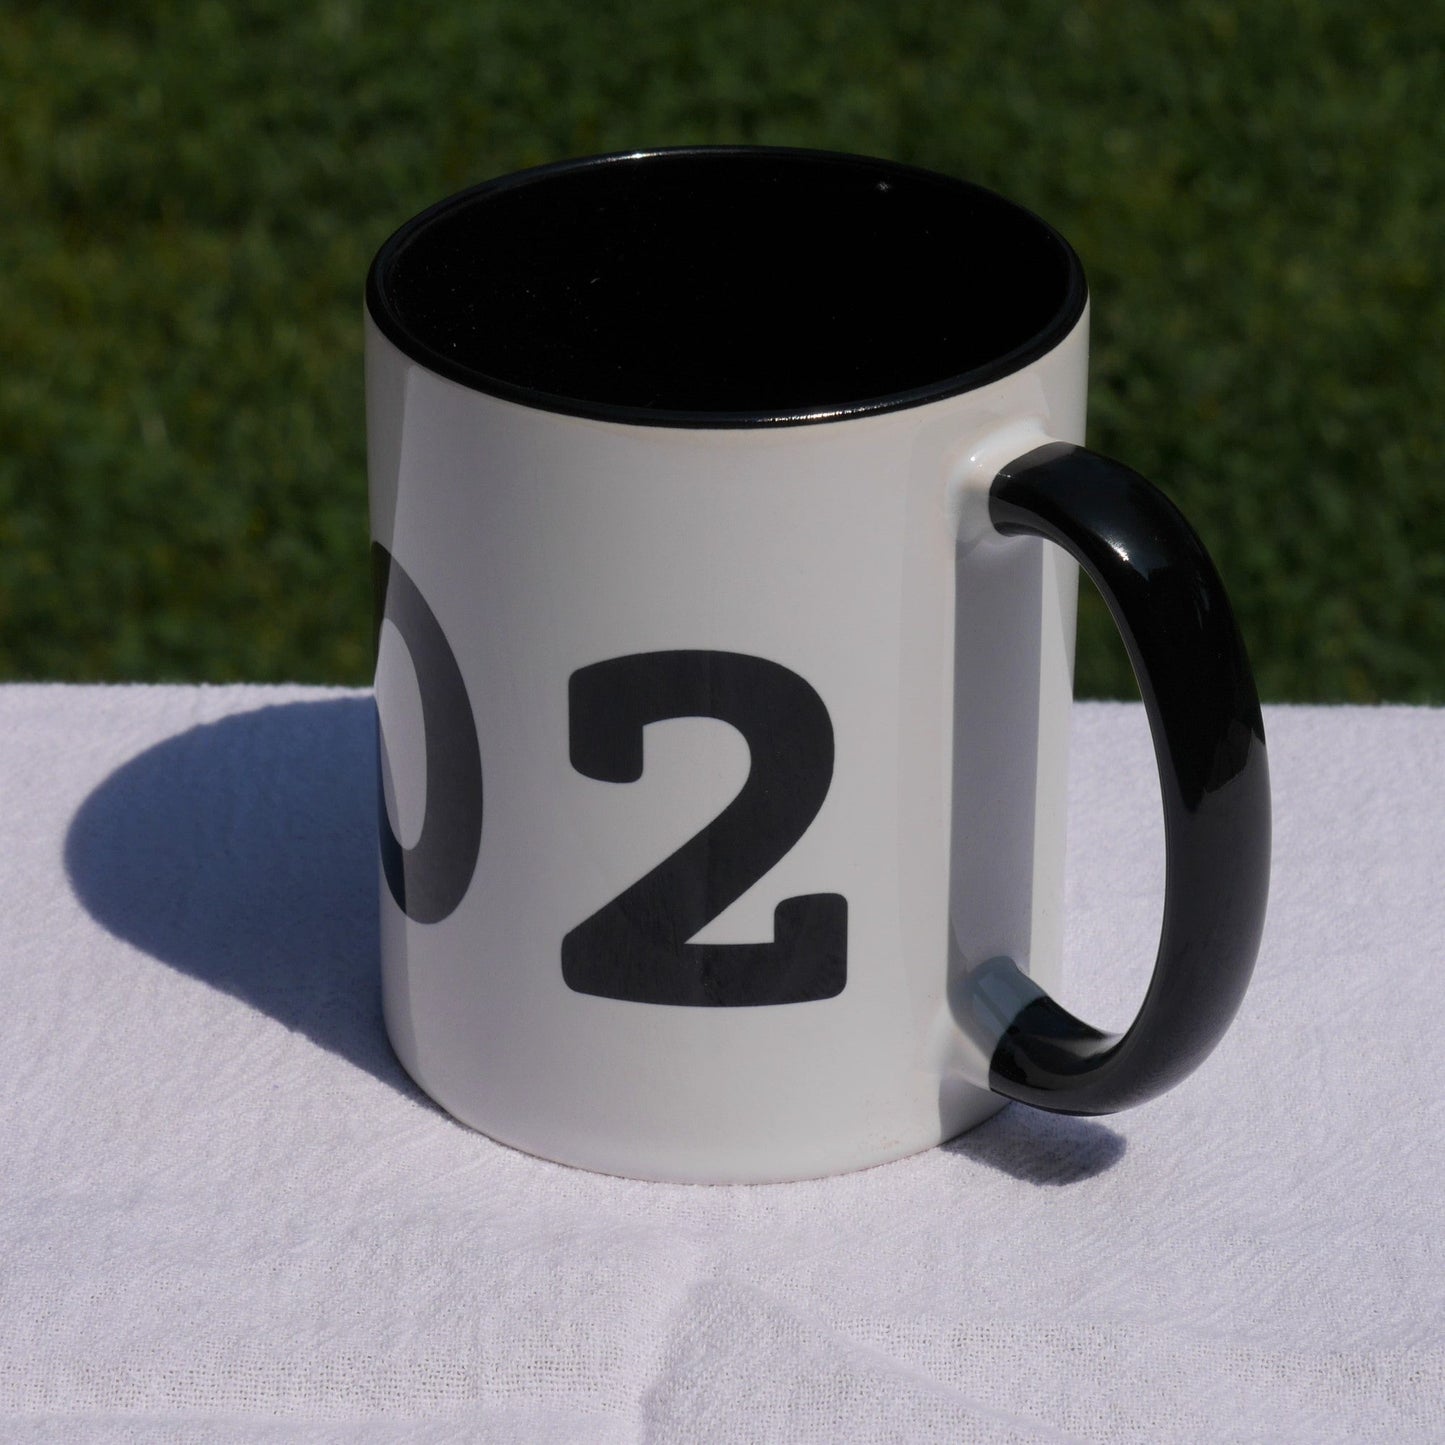 Aviation-Theme Coffee Mug - Black • YUM Yuma • YHM Designs - Image 06